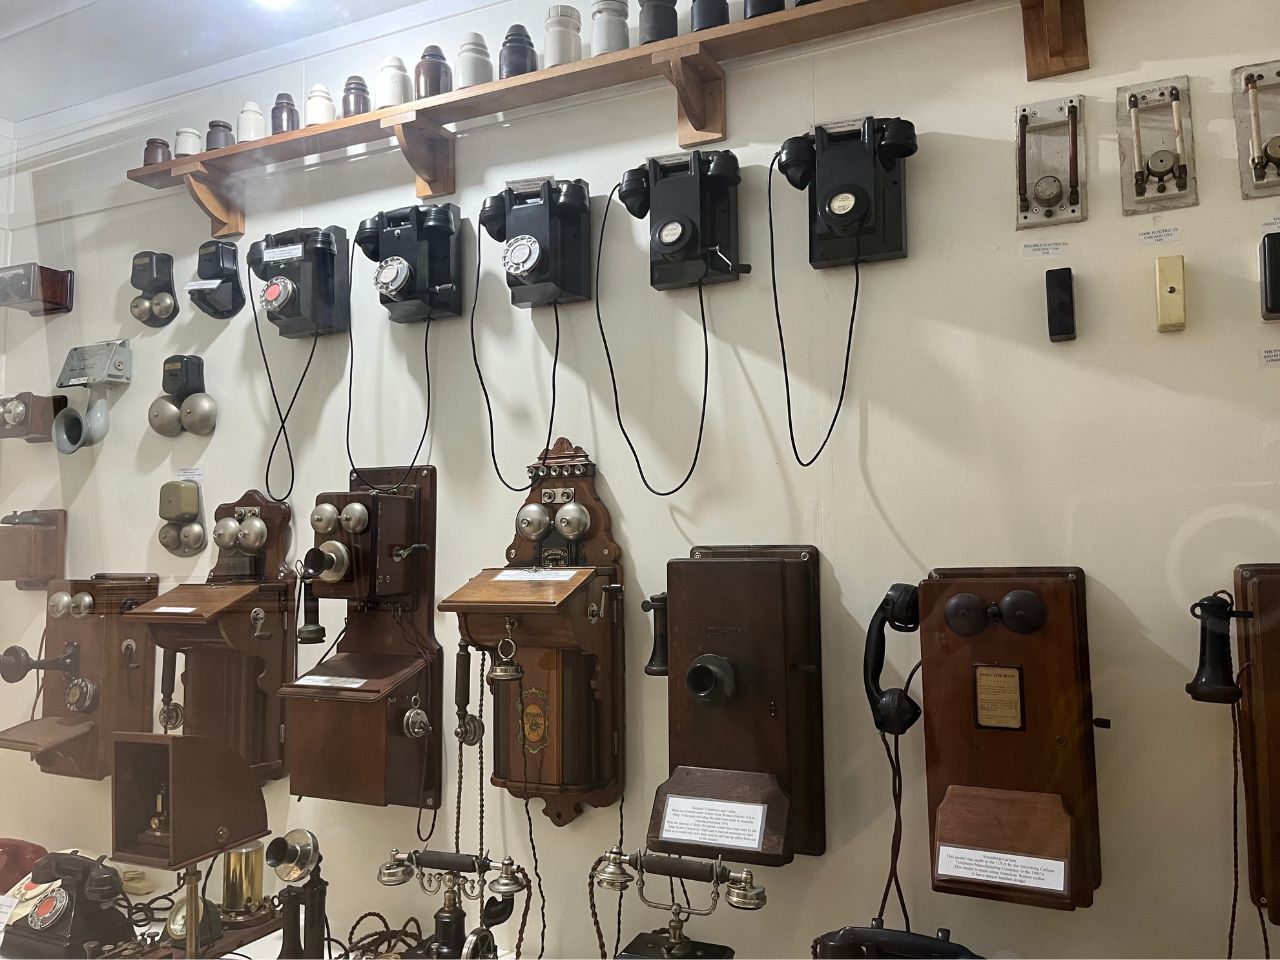 Telephone Exhibition